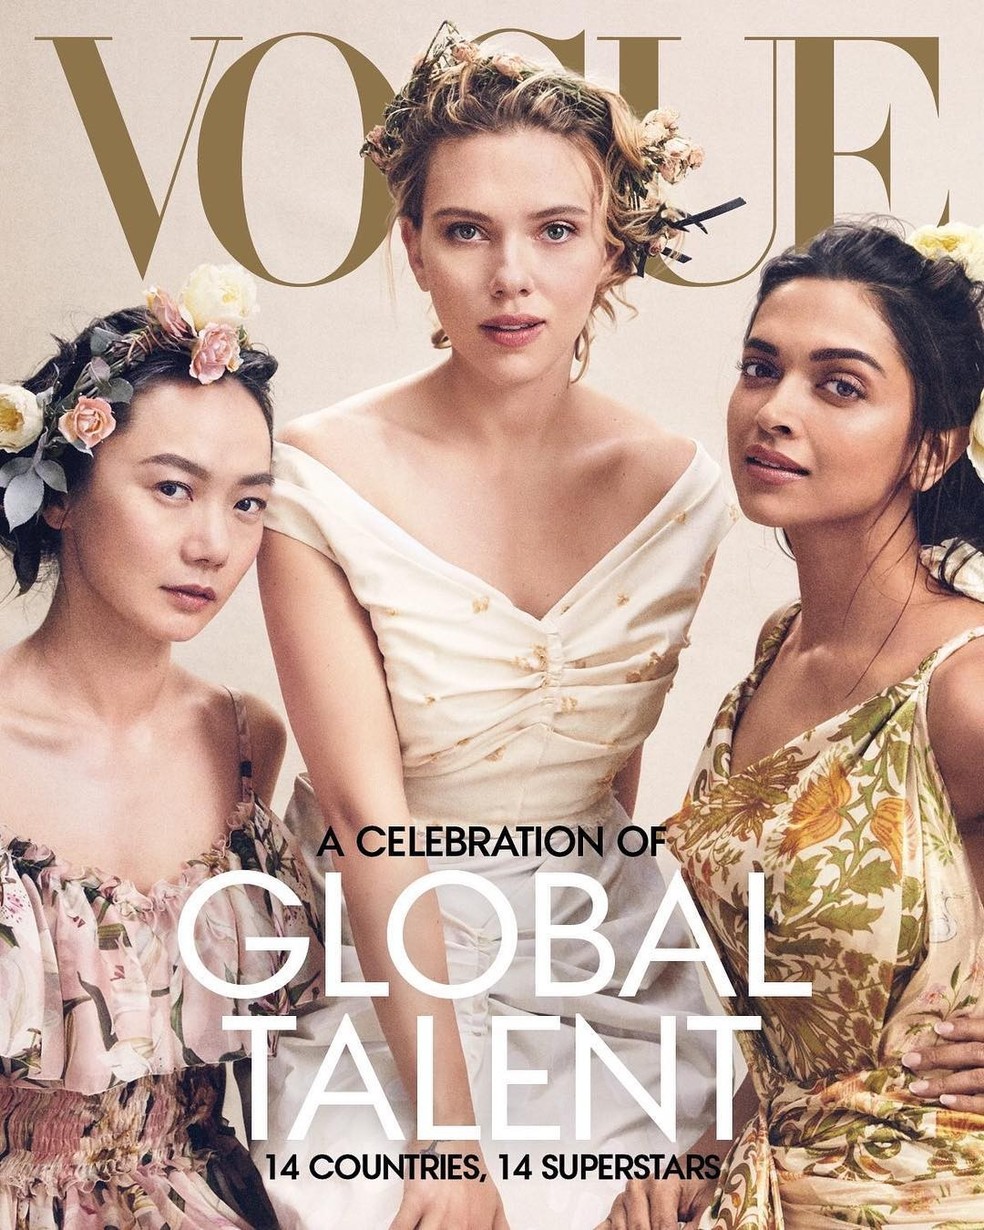 Da esquerda para direita: Doona Bae, Scarlett Johansson e Deepika Padukone (Foto: Reprodução) — Foto: Vogue